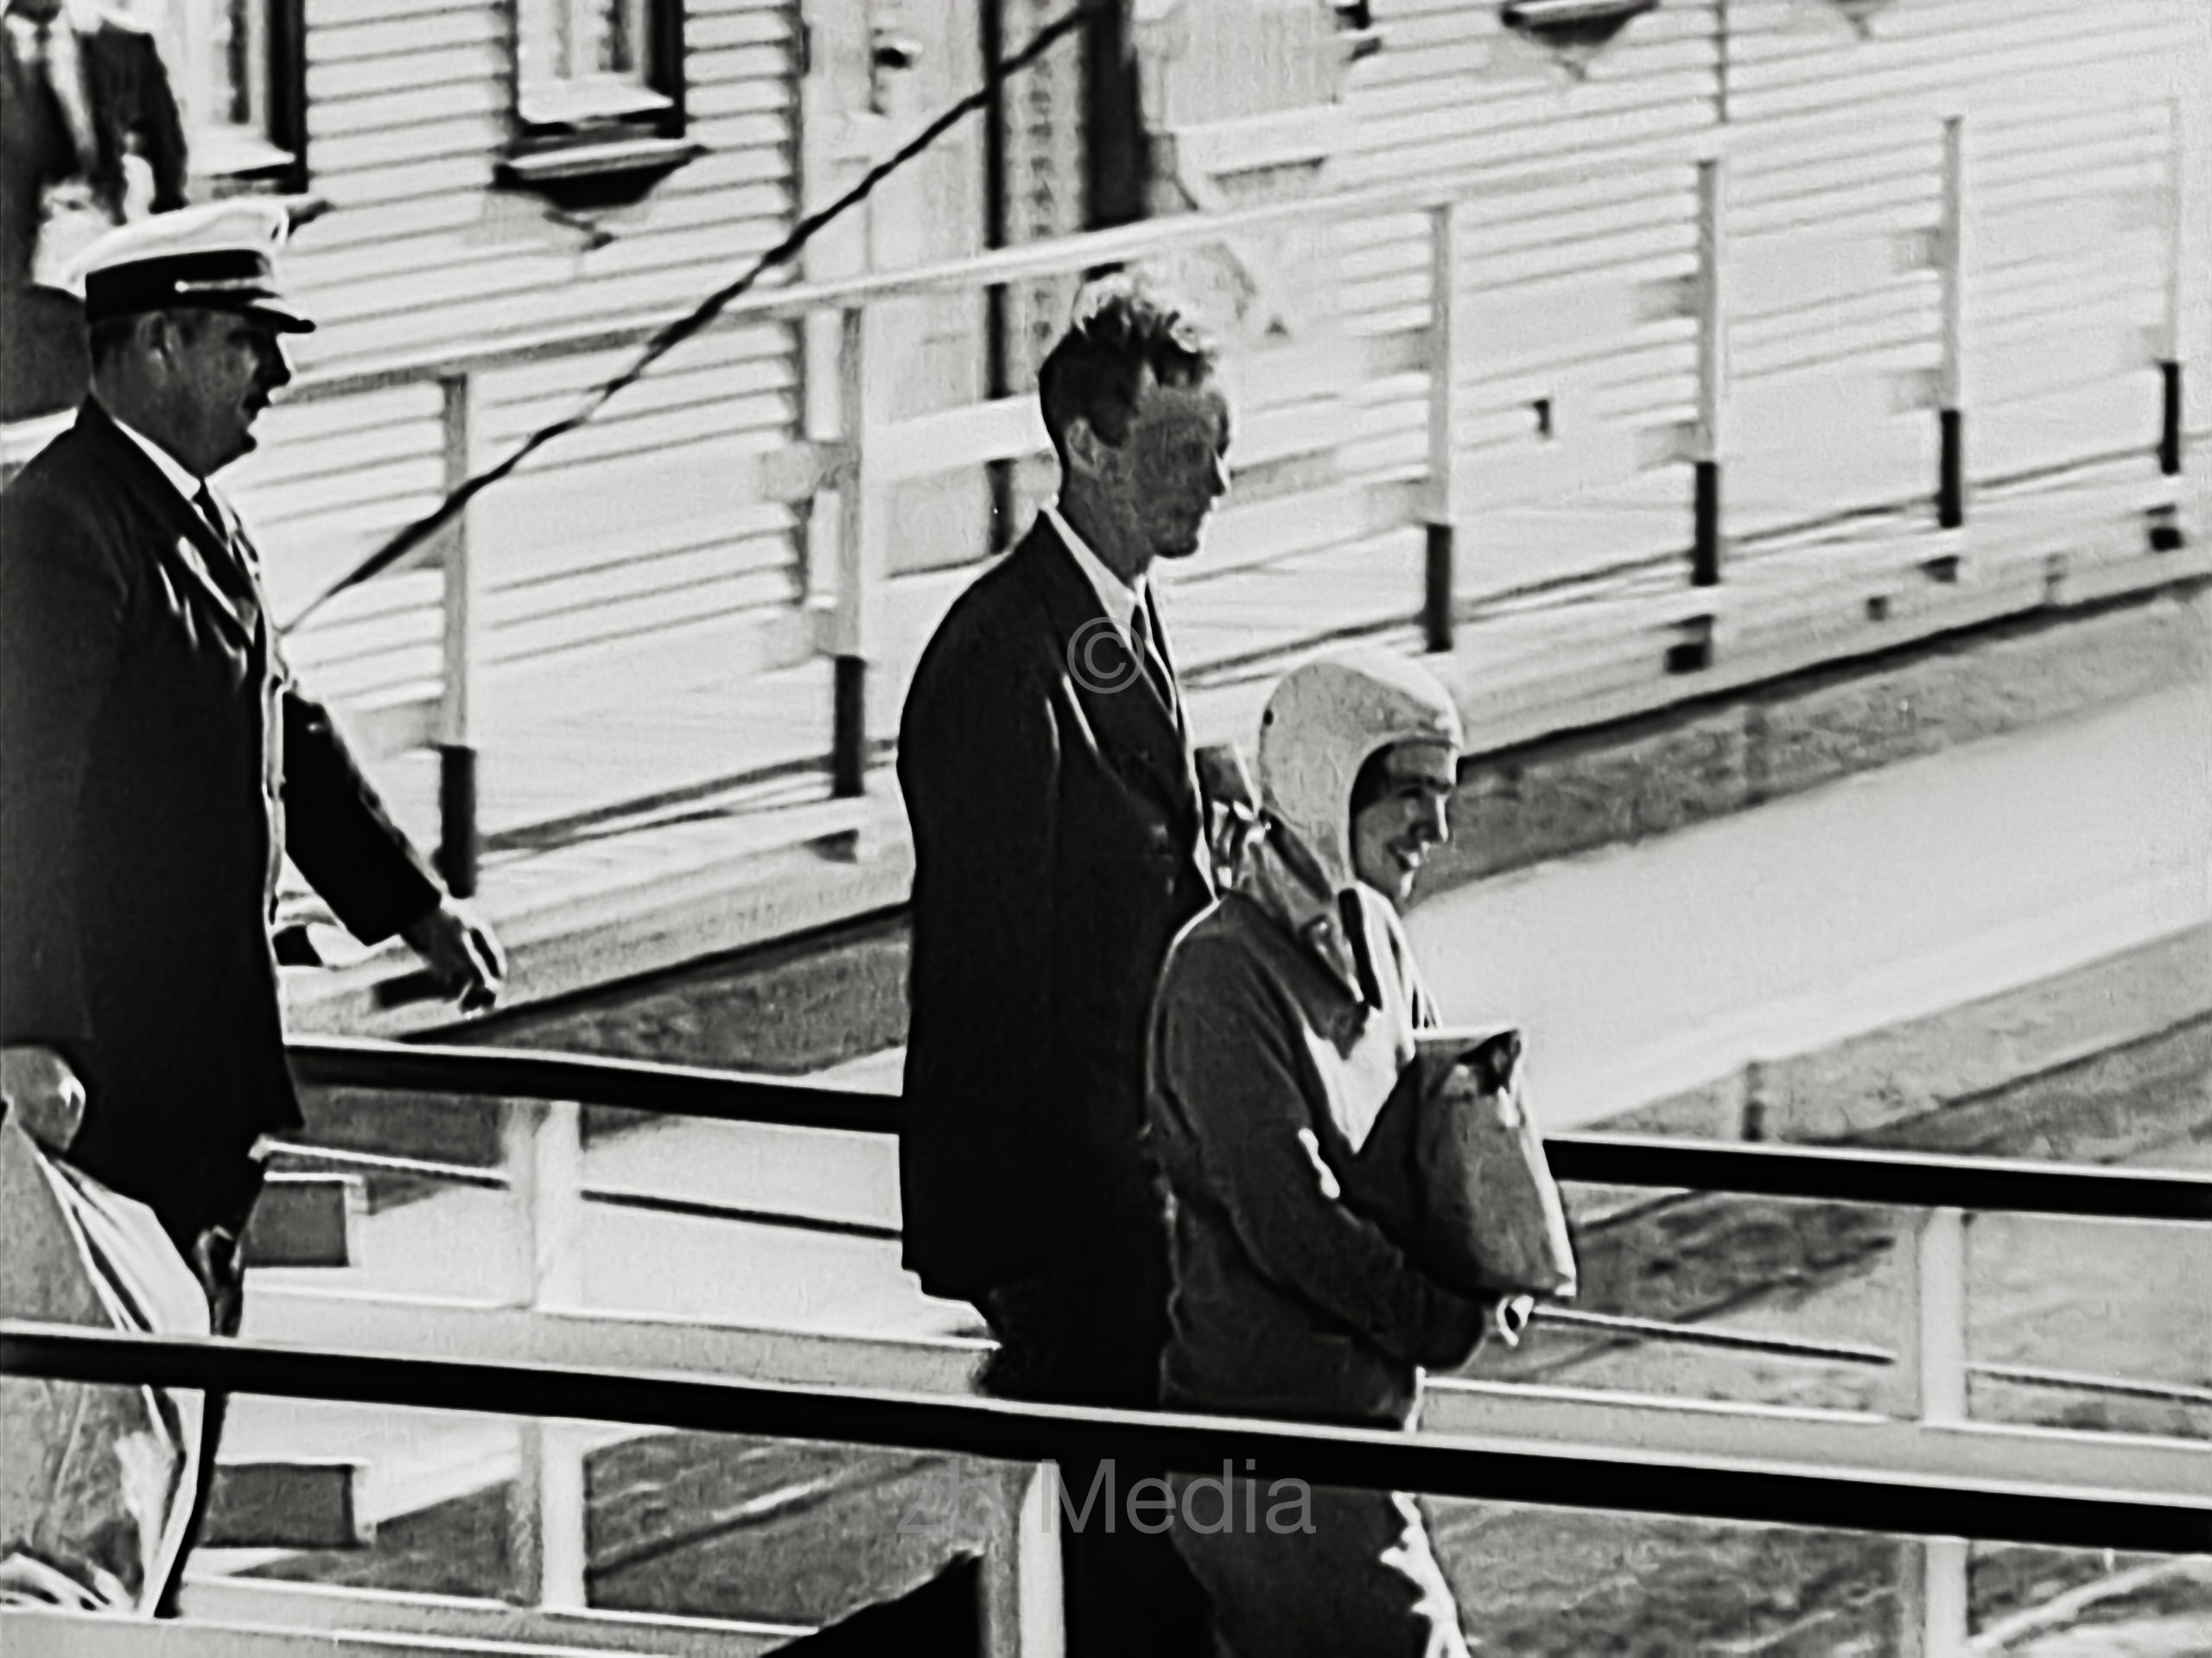 Anne und Charles Lindbergh 1933